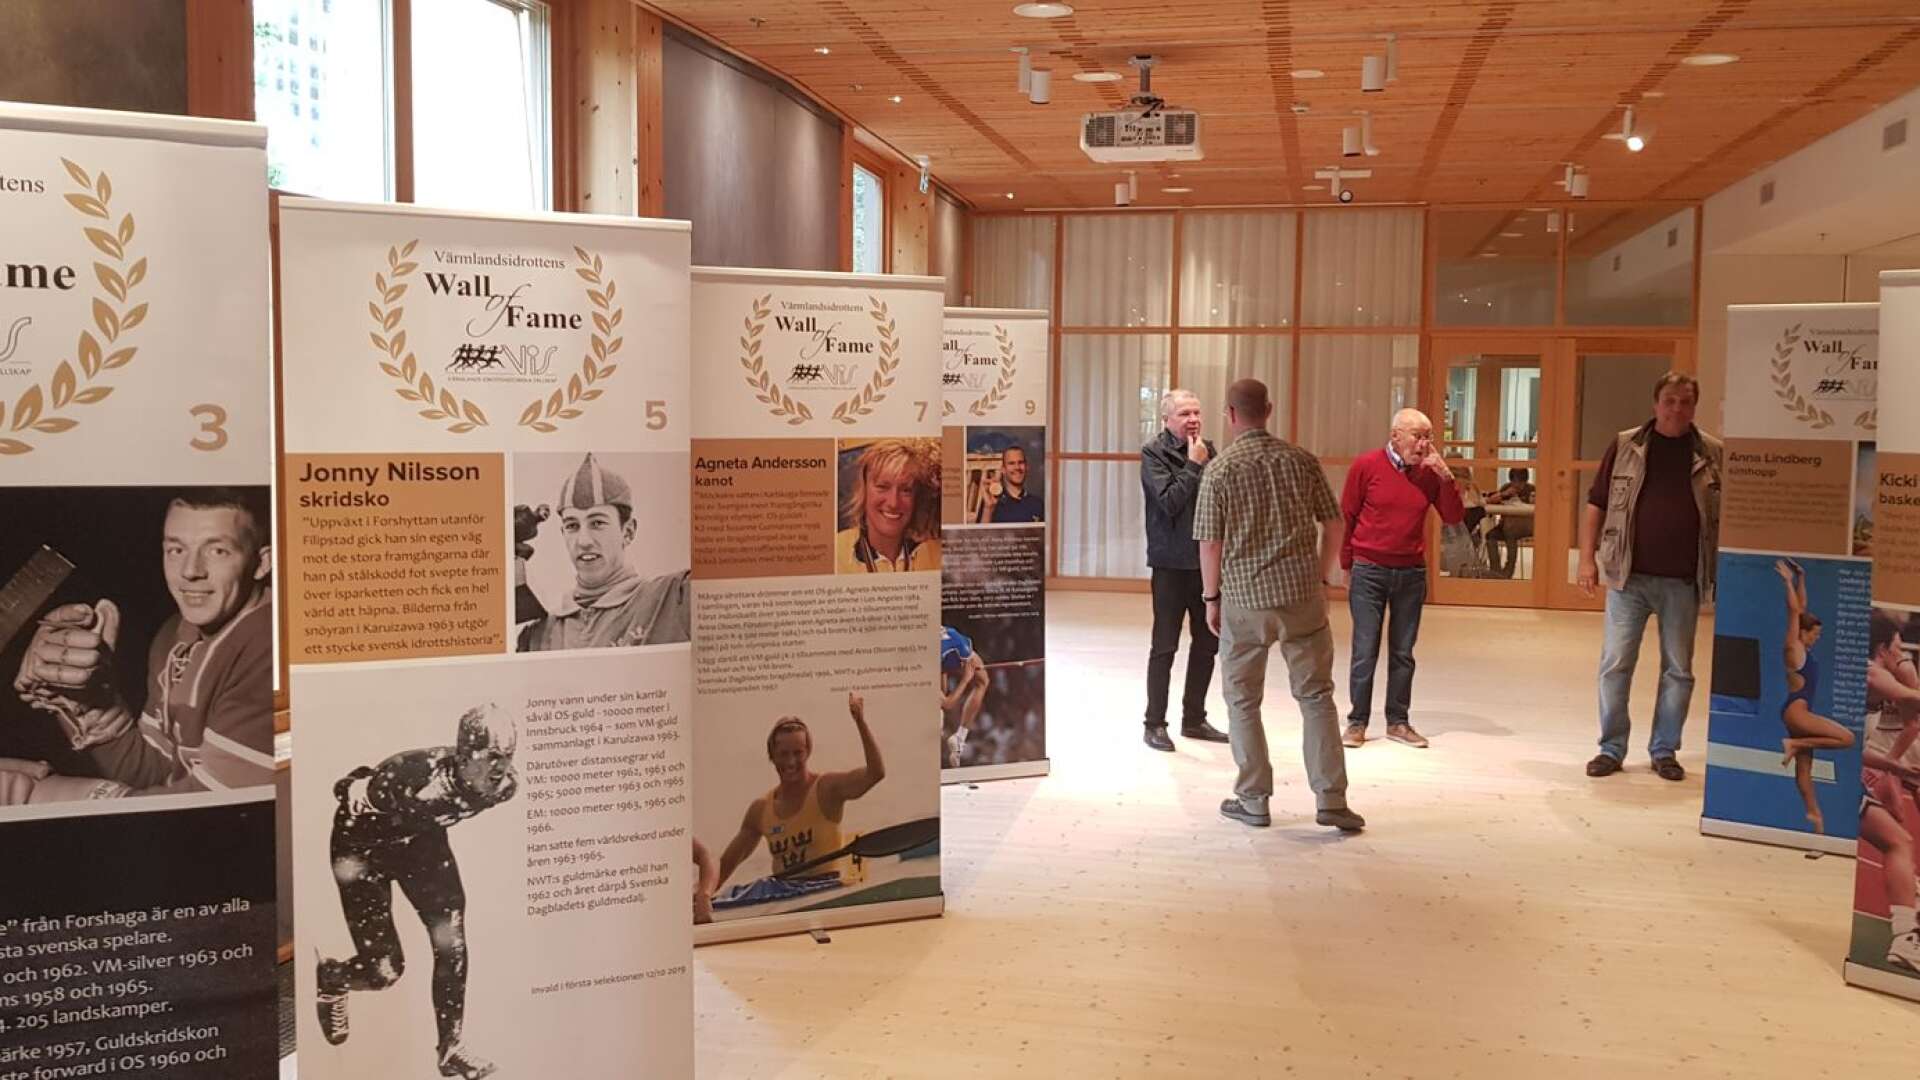 Bilden visar delar utställningen Värmlandsidrottens Wall of Fame.